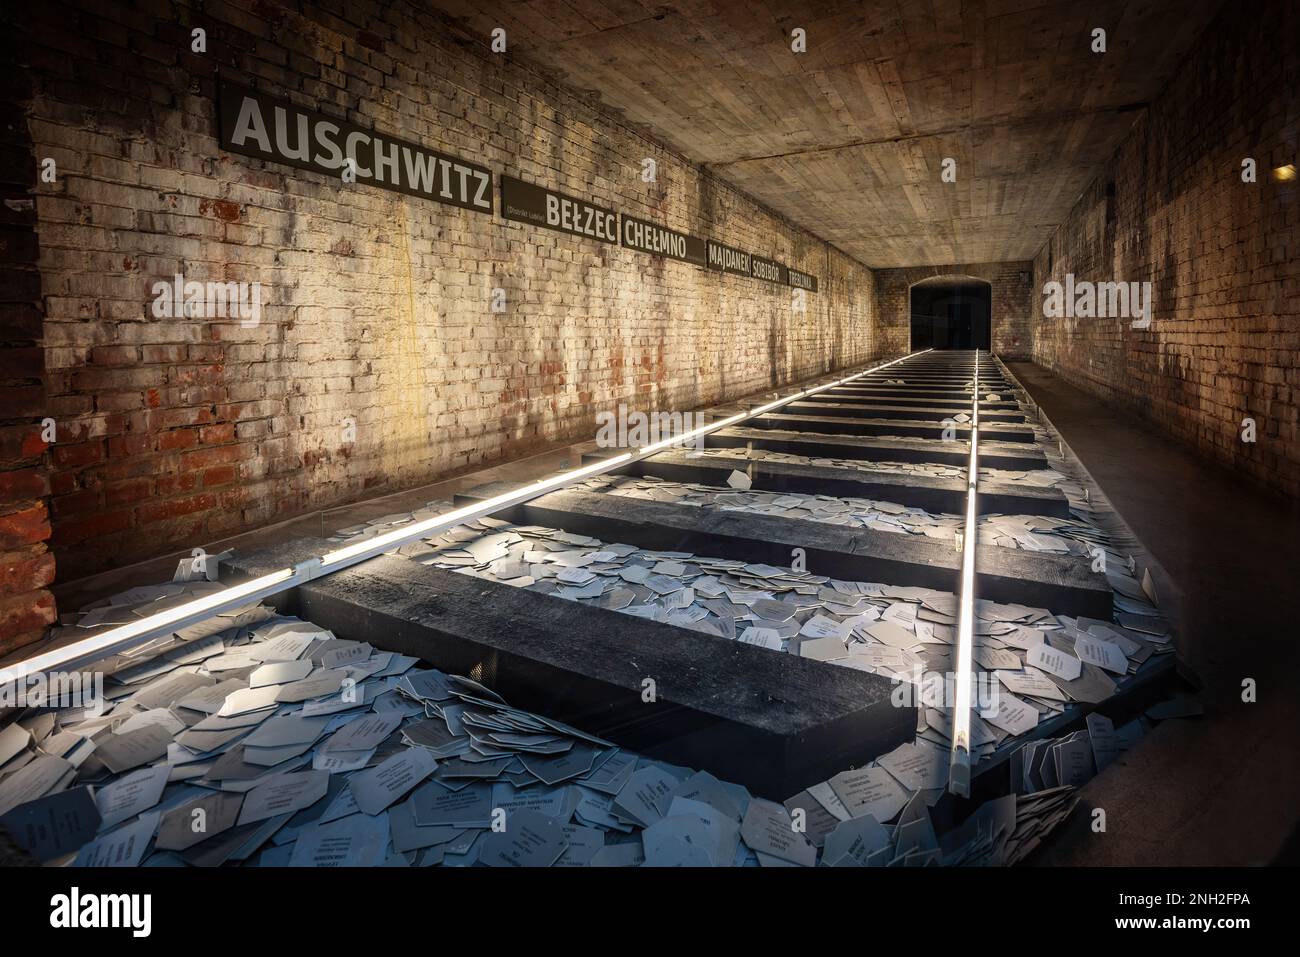 Innere des Nazi-Parteigeländes - Dokumentationszentrum - Nürnberg, Bayern, Deutschland Stockfoto